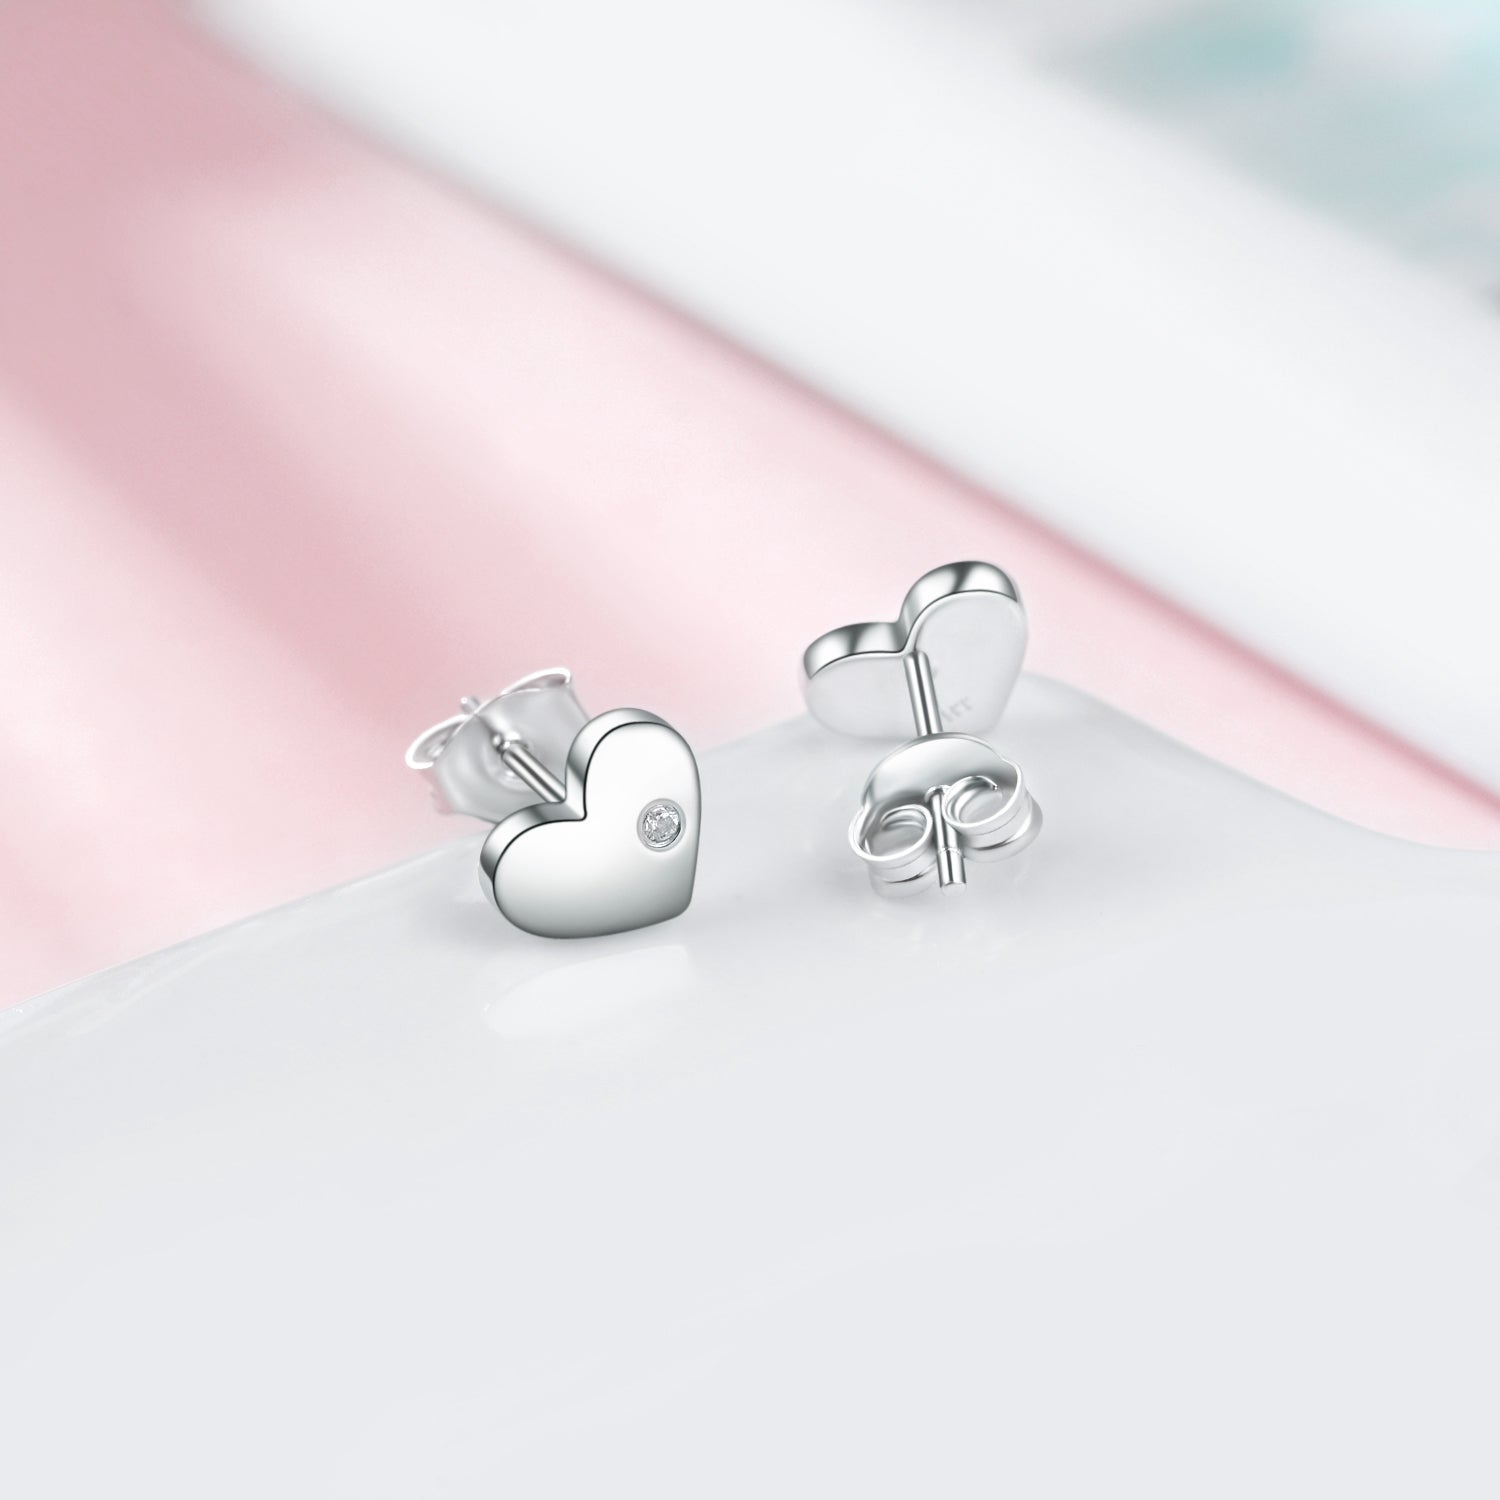 Cute Cubic Zircon Love Heart Shape Stud Earrings for Wife Gift